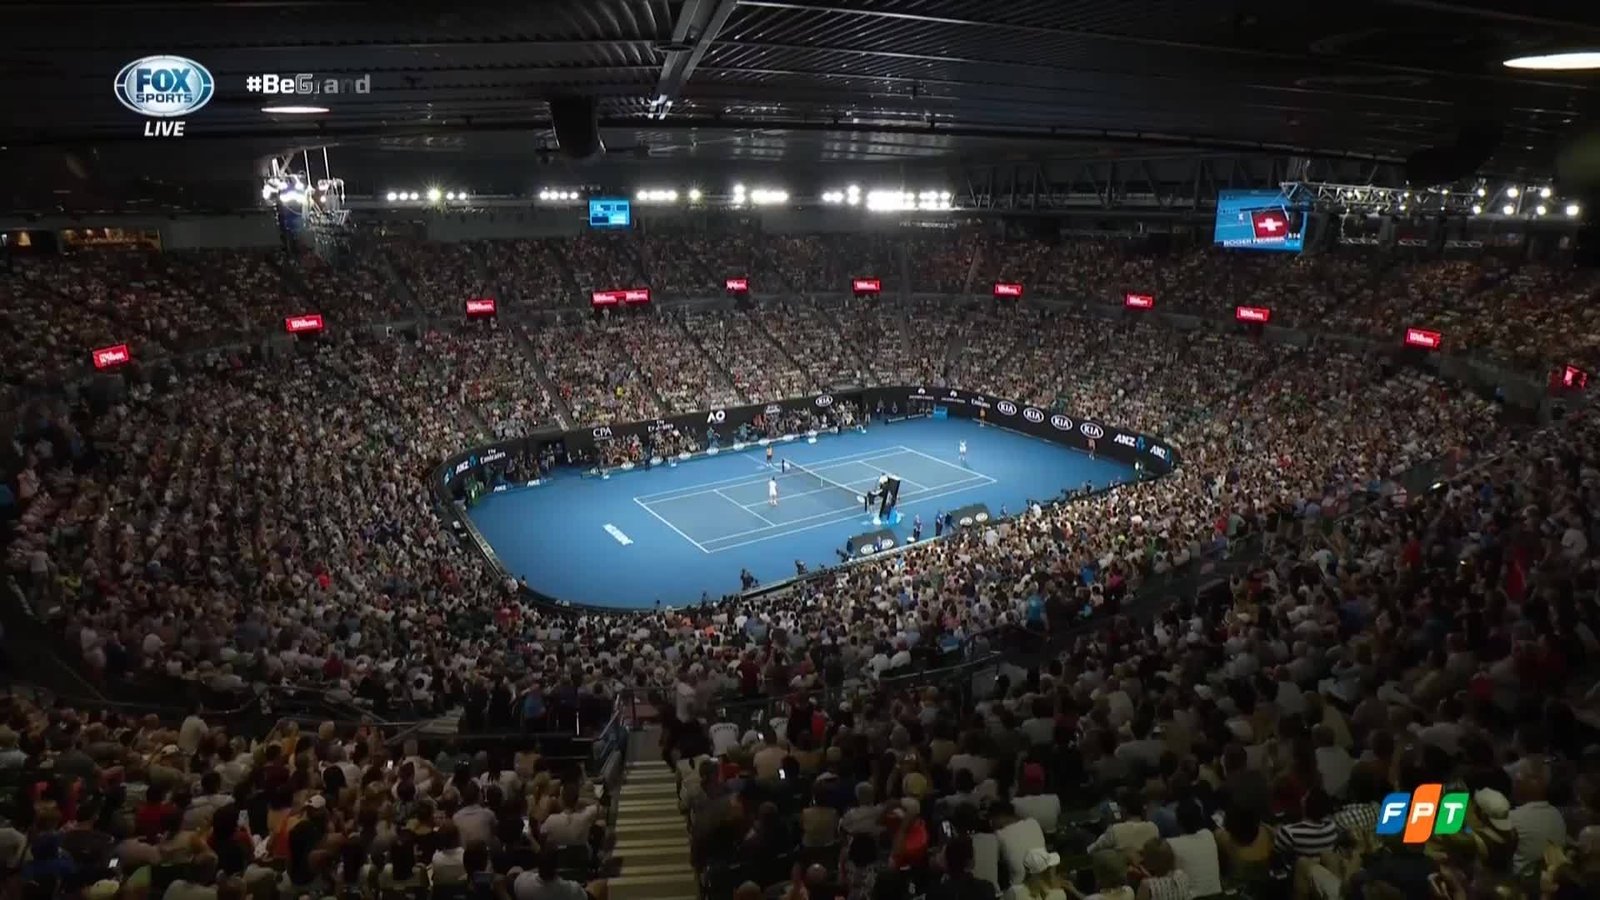 Federer won the Australian Open, winning his 20th Grand Slam